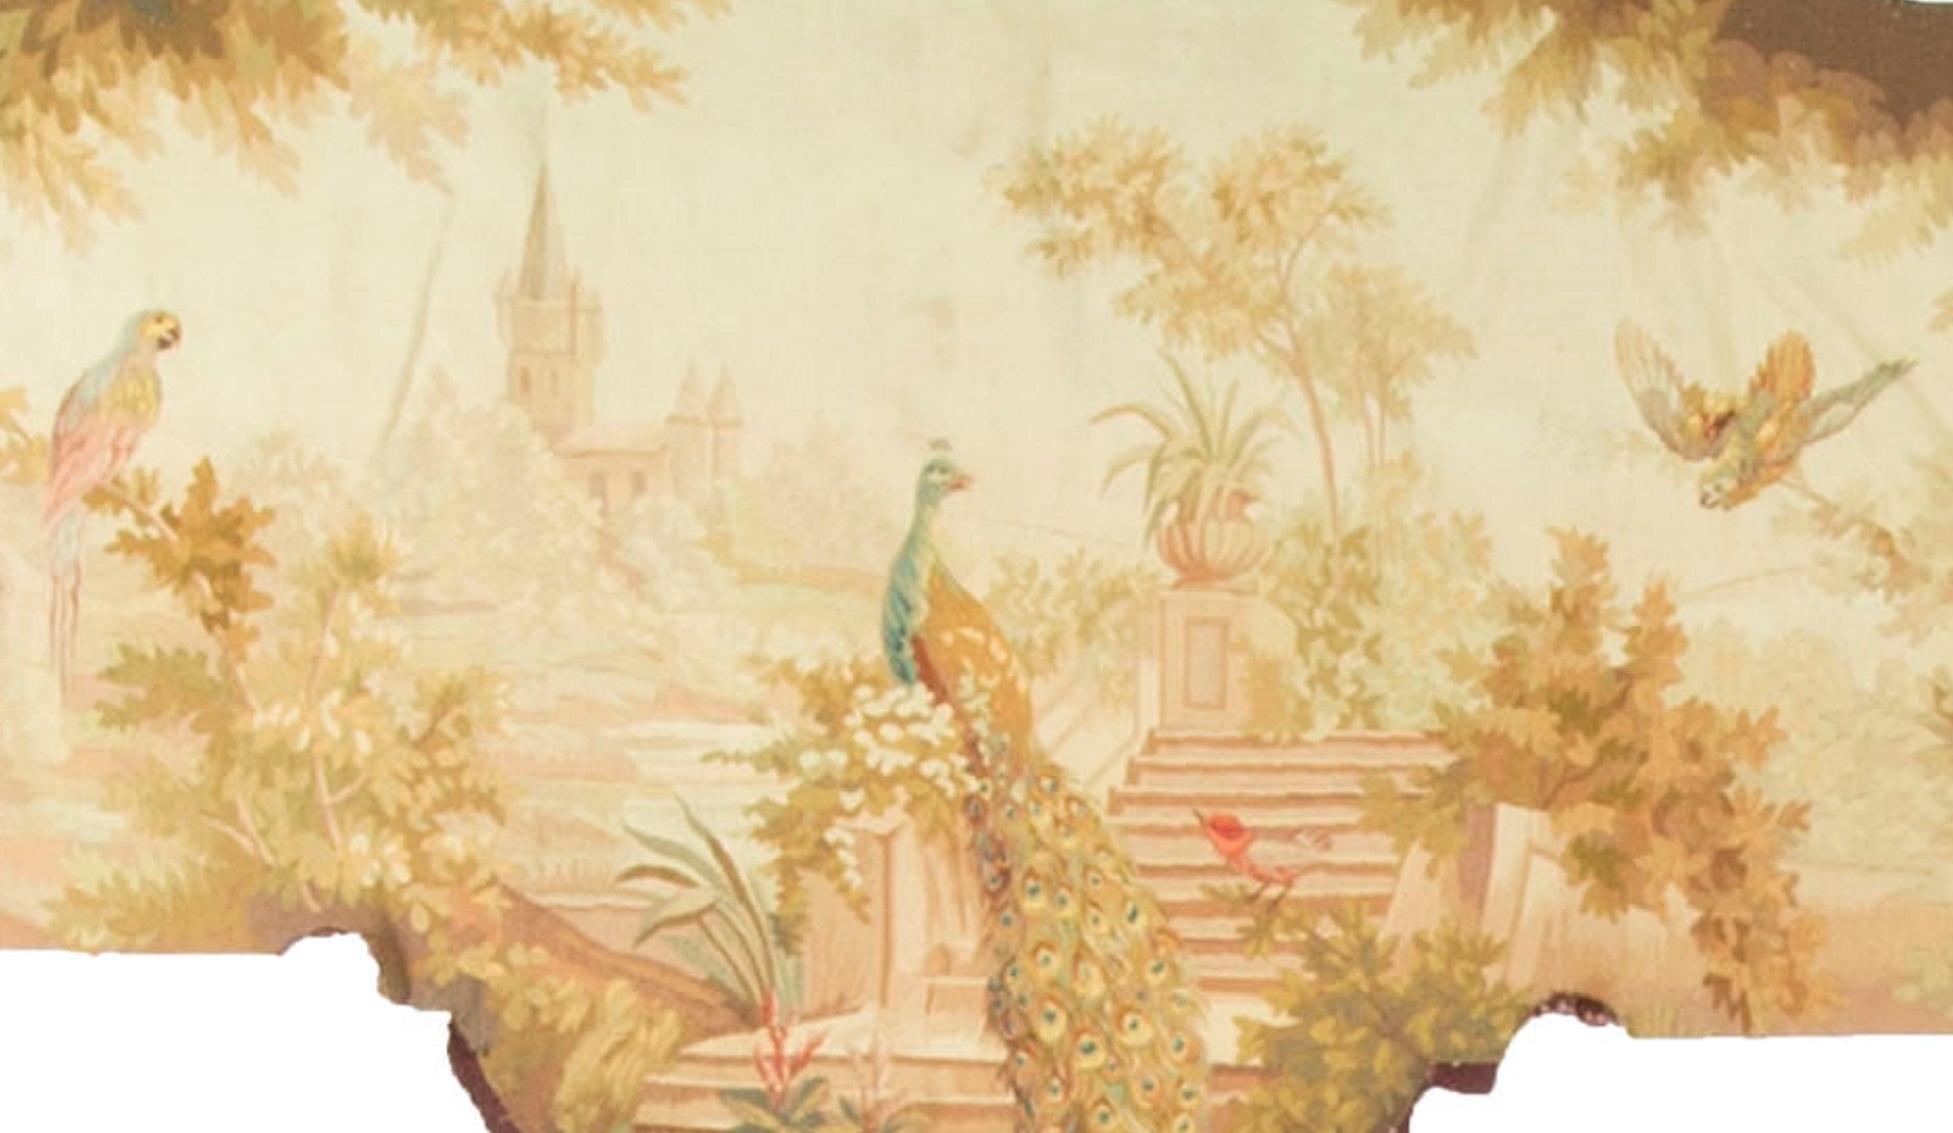 Un merveilleux panneau de tapisserie français datant d'environ 1830. Le paon assis si fièrement, au premier plan, sur les marches menant à une maison de campagne. D'autres oiseaux sont perchés ou volent dans la campagne si bien décrite dans ce